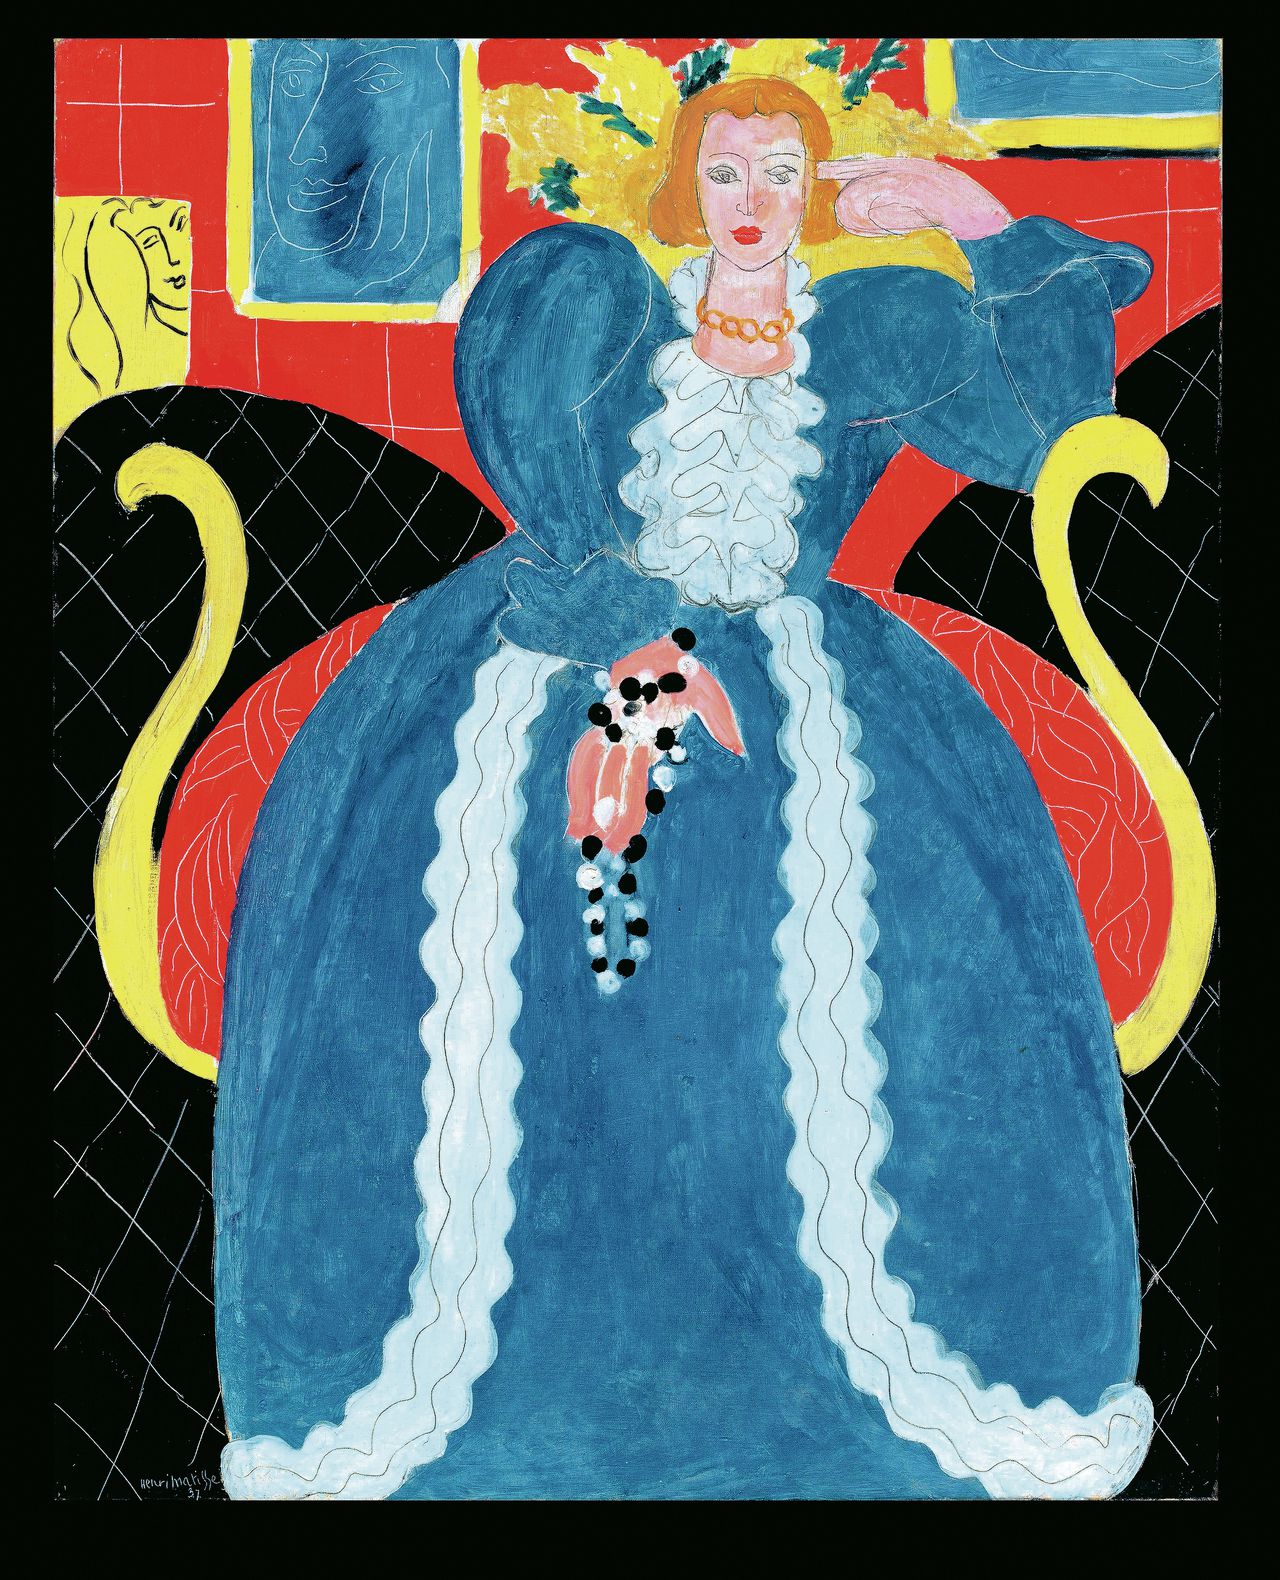 Femme en bleu, een doek van Henri Matisse uit 1937, geleend van het Philadelphia Museum of Art.